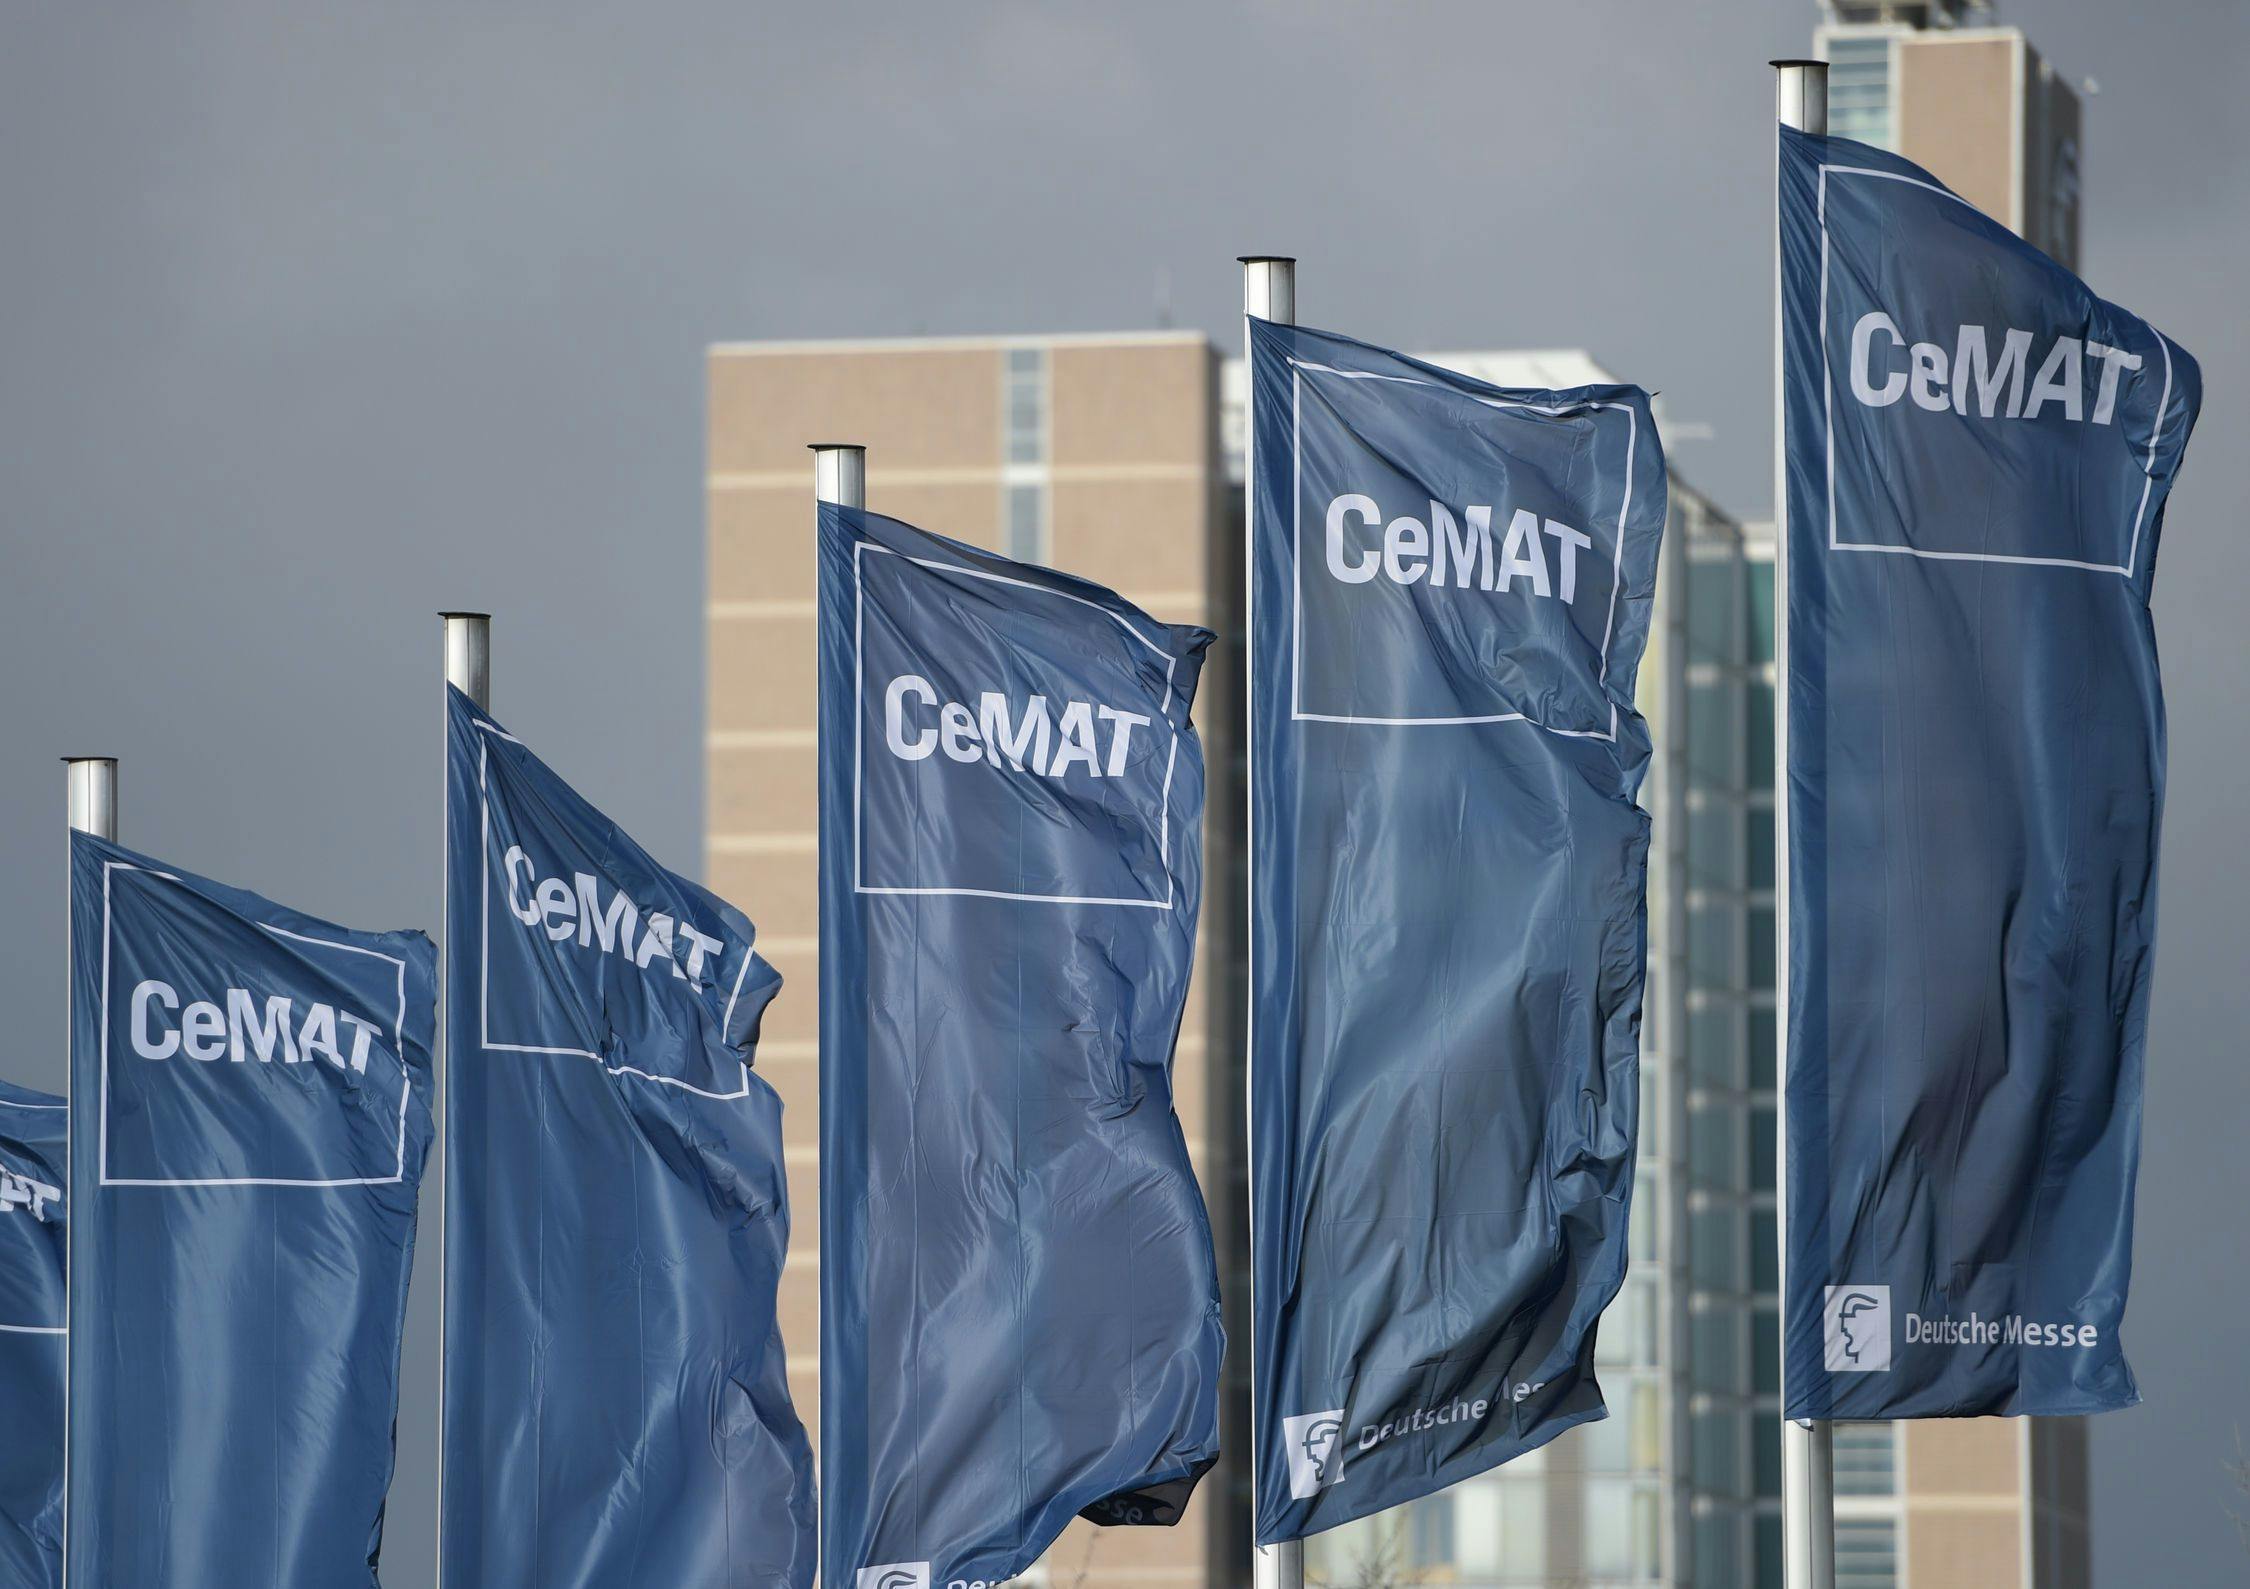 Dal 2018 il CeMAT si terrà con cadenza biennale